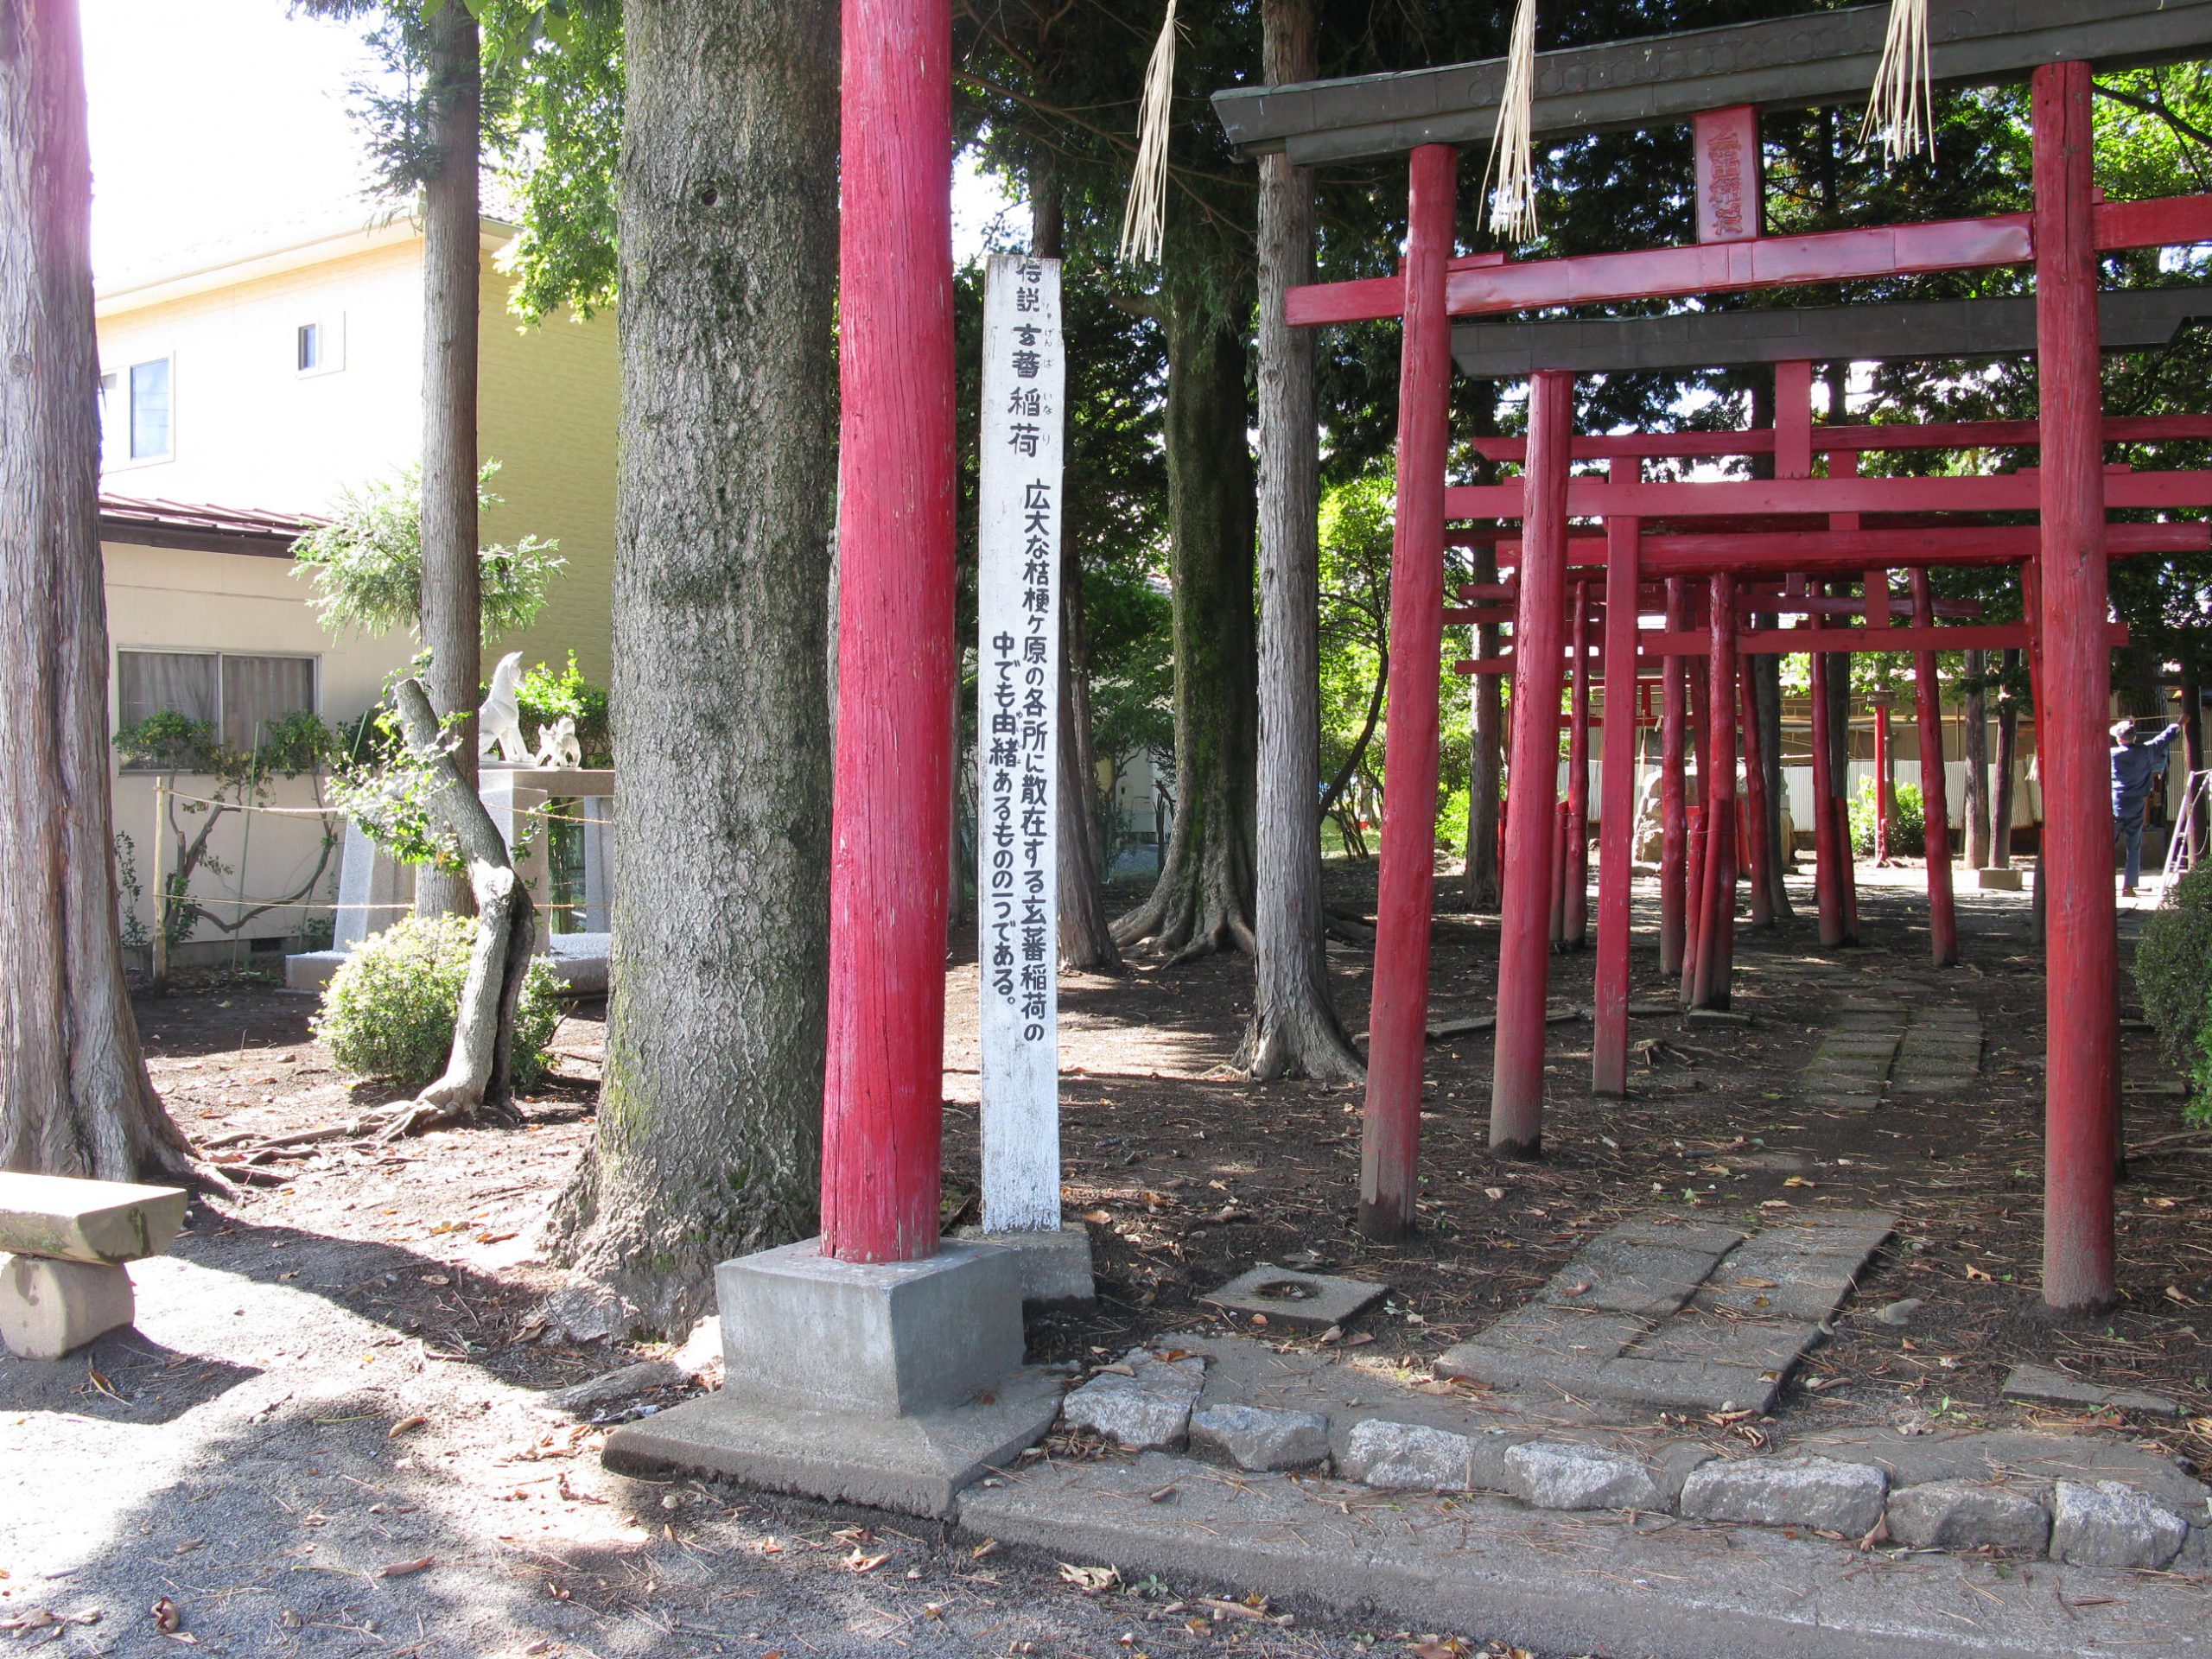 桔梗ヶ原神社と玄蕃之丞の石像 塩尻市観光協会